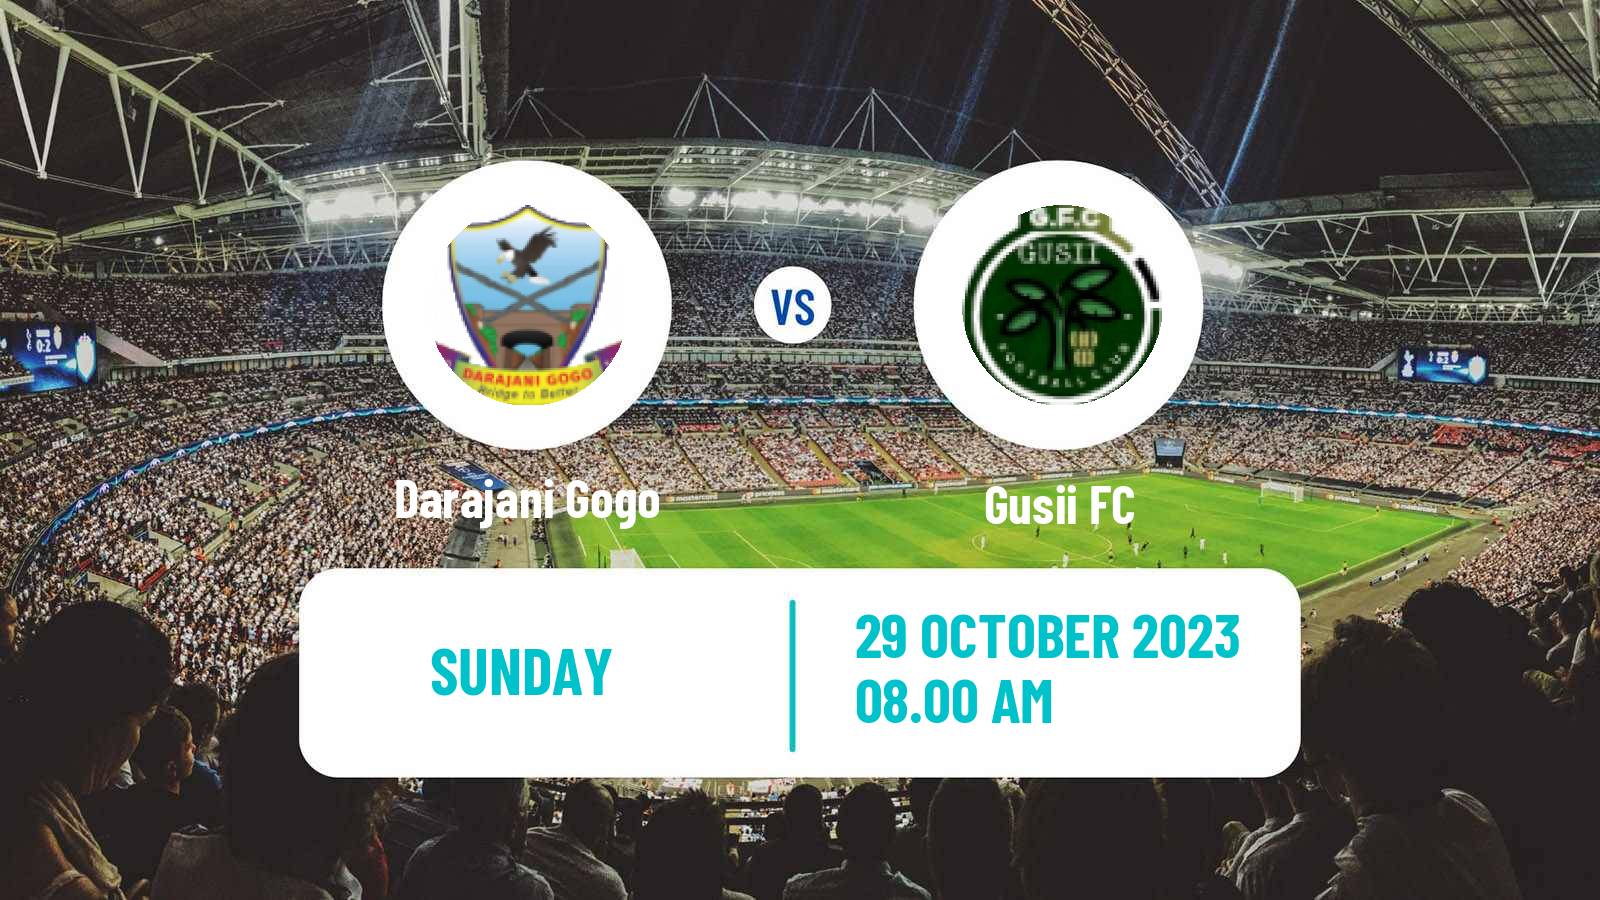 Soccer Kenyan Super League Darajani Gogo - Gusii